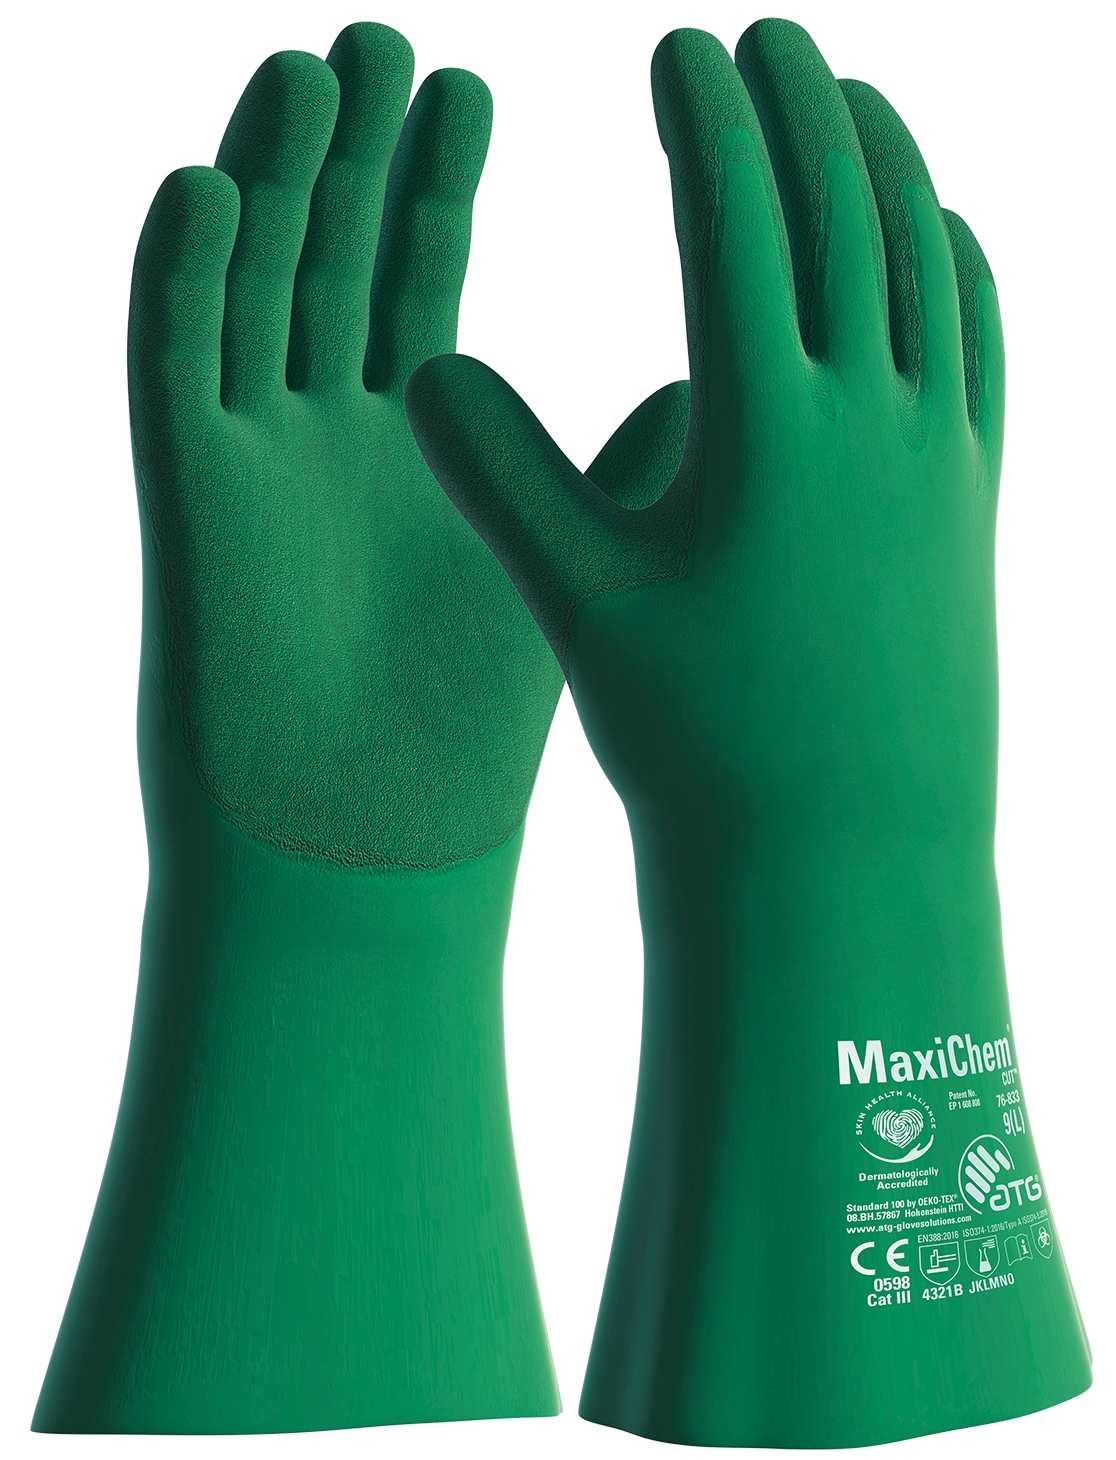 MaxiChem® Cut™ Chemikalienschutz-Handschuhe (76-833) in Grün, Größe 8